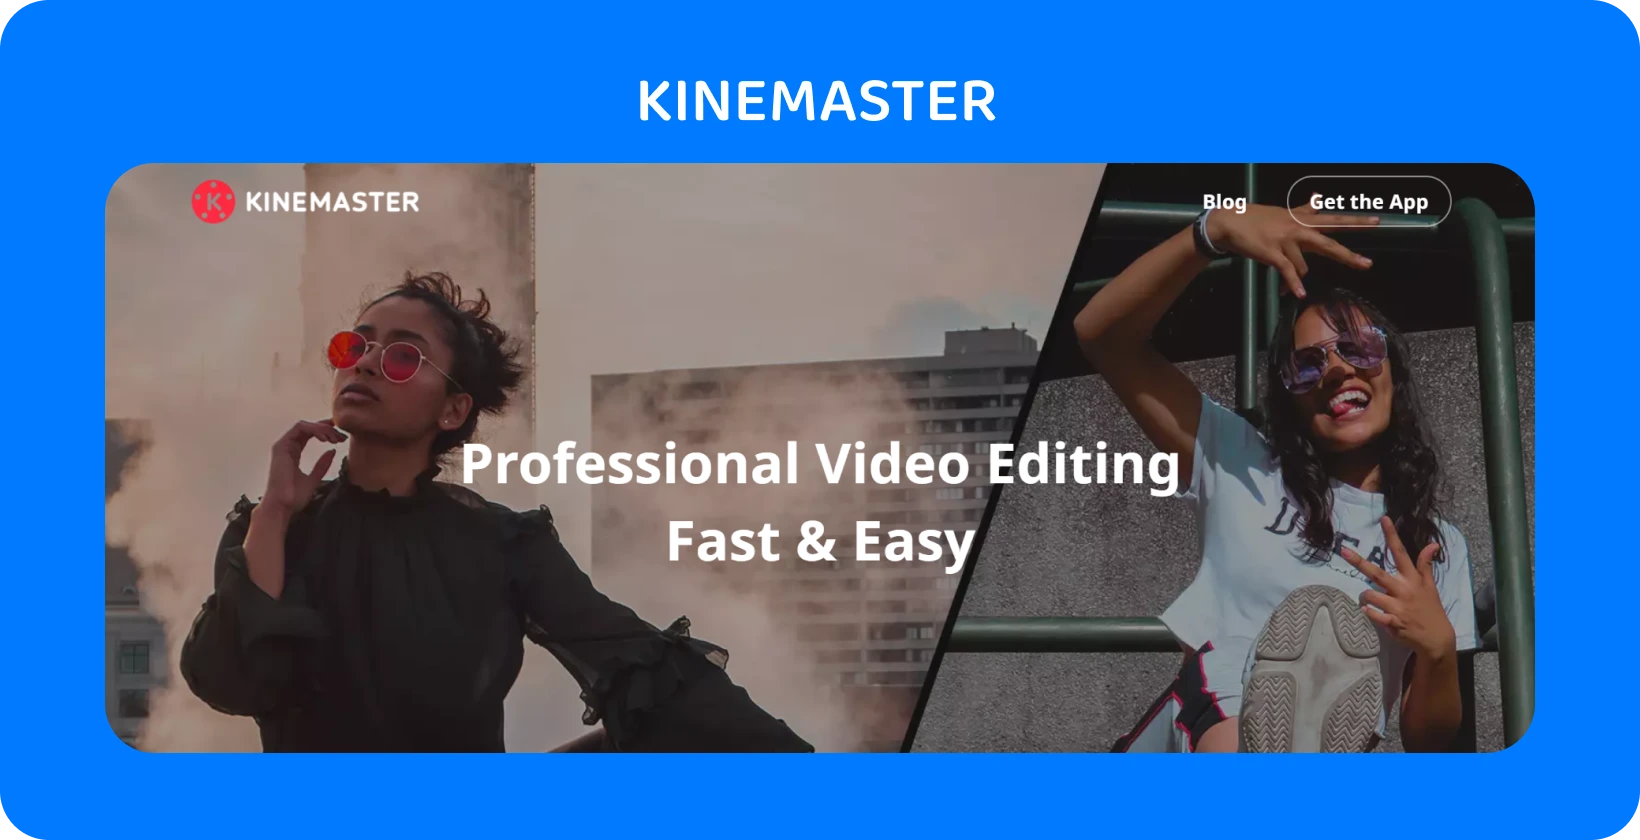 두 명의 모델이 포즈를 취하고 있는 KineMaster 앱 광고는 빠르고 쉬운 전문적인 비디오 편집을 강조합니다.